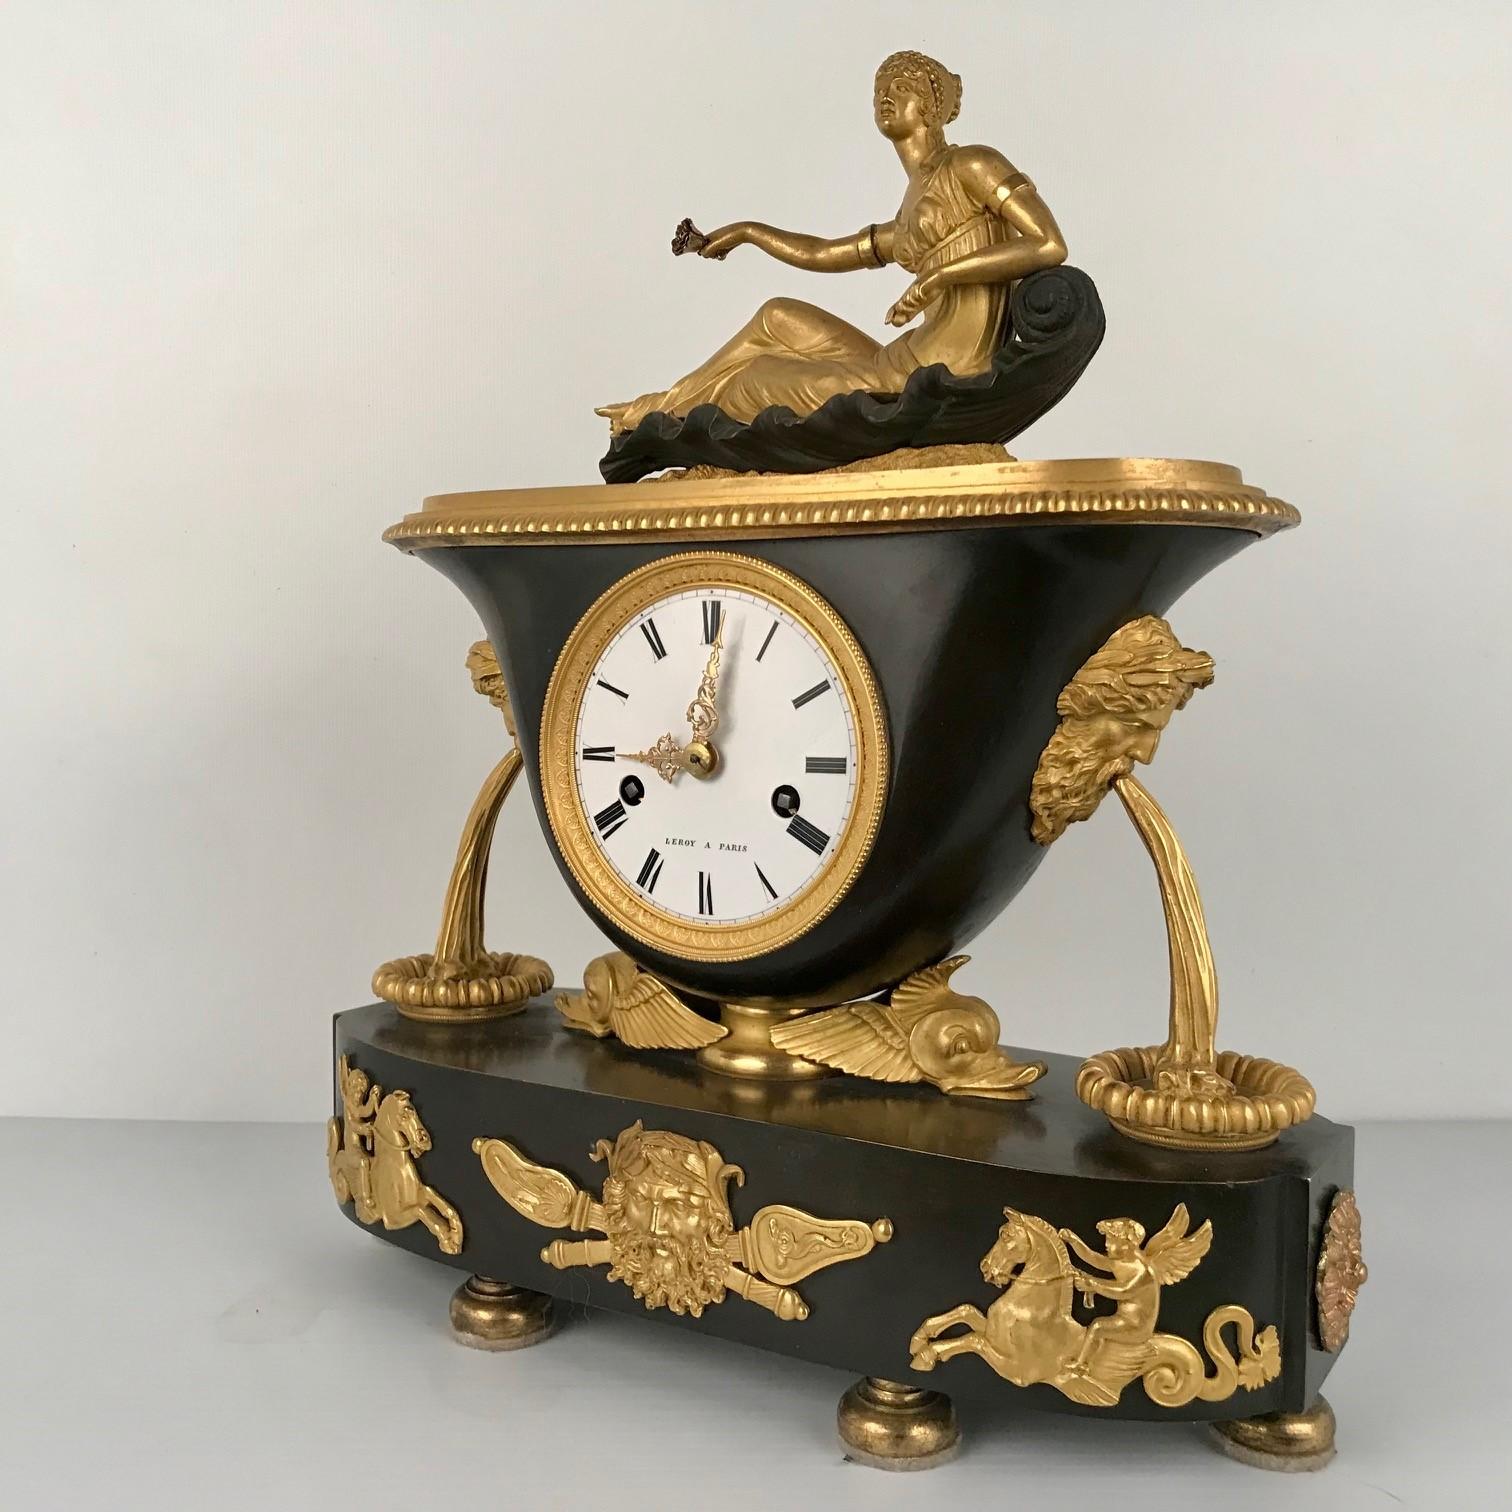 Cette horloge de cheminée est fabriquée par un fabricant parisien très respecté dans un style à la mode. La base ovale supporte un boîtier d'horloge en forme de vase, lui-même soutenu par des têtes de dauphins ailés et flanqué de fontaines